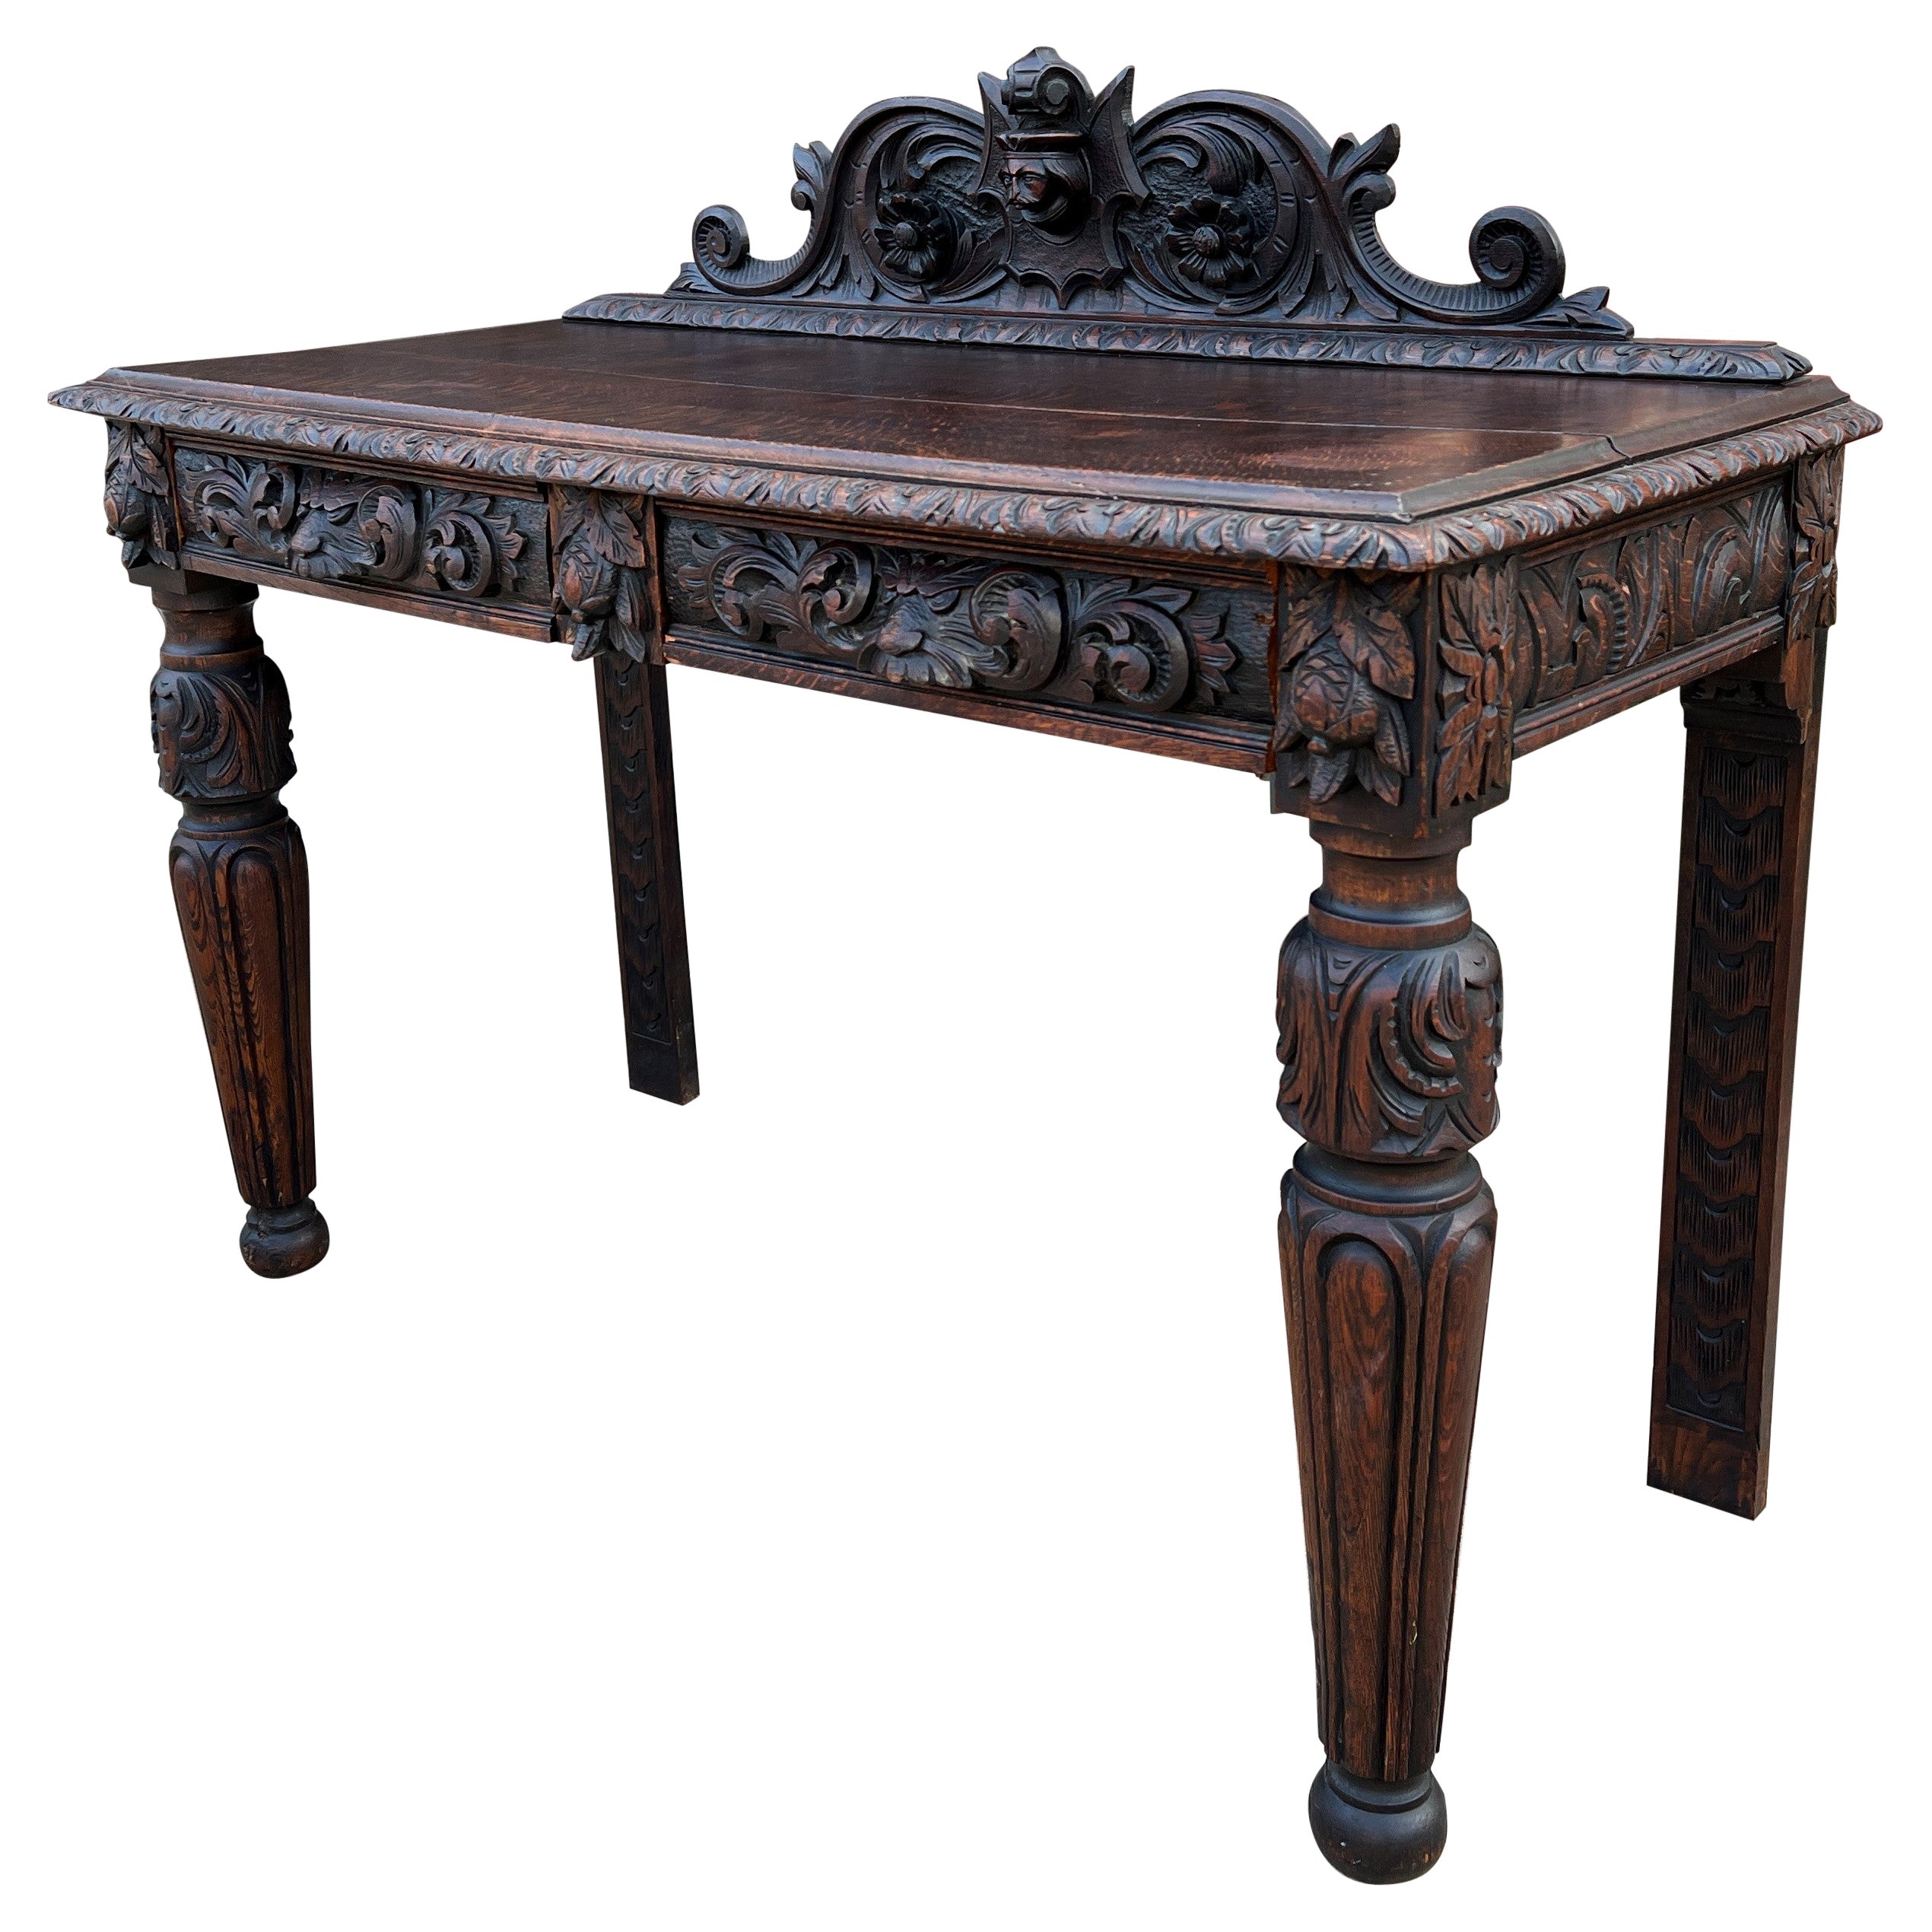 Antike Französisch Tabelle Halle Eintrag Konsole Sofa Tisch zwei Schubladen Eiche C. 1890s